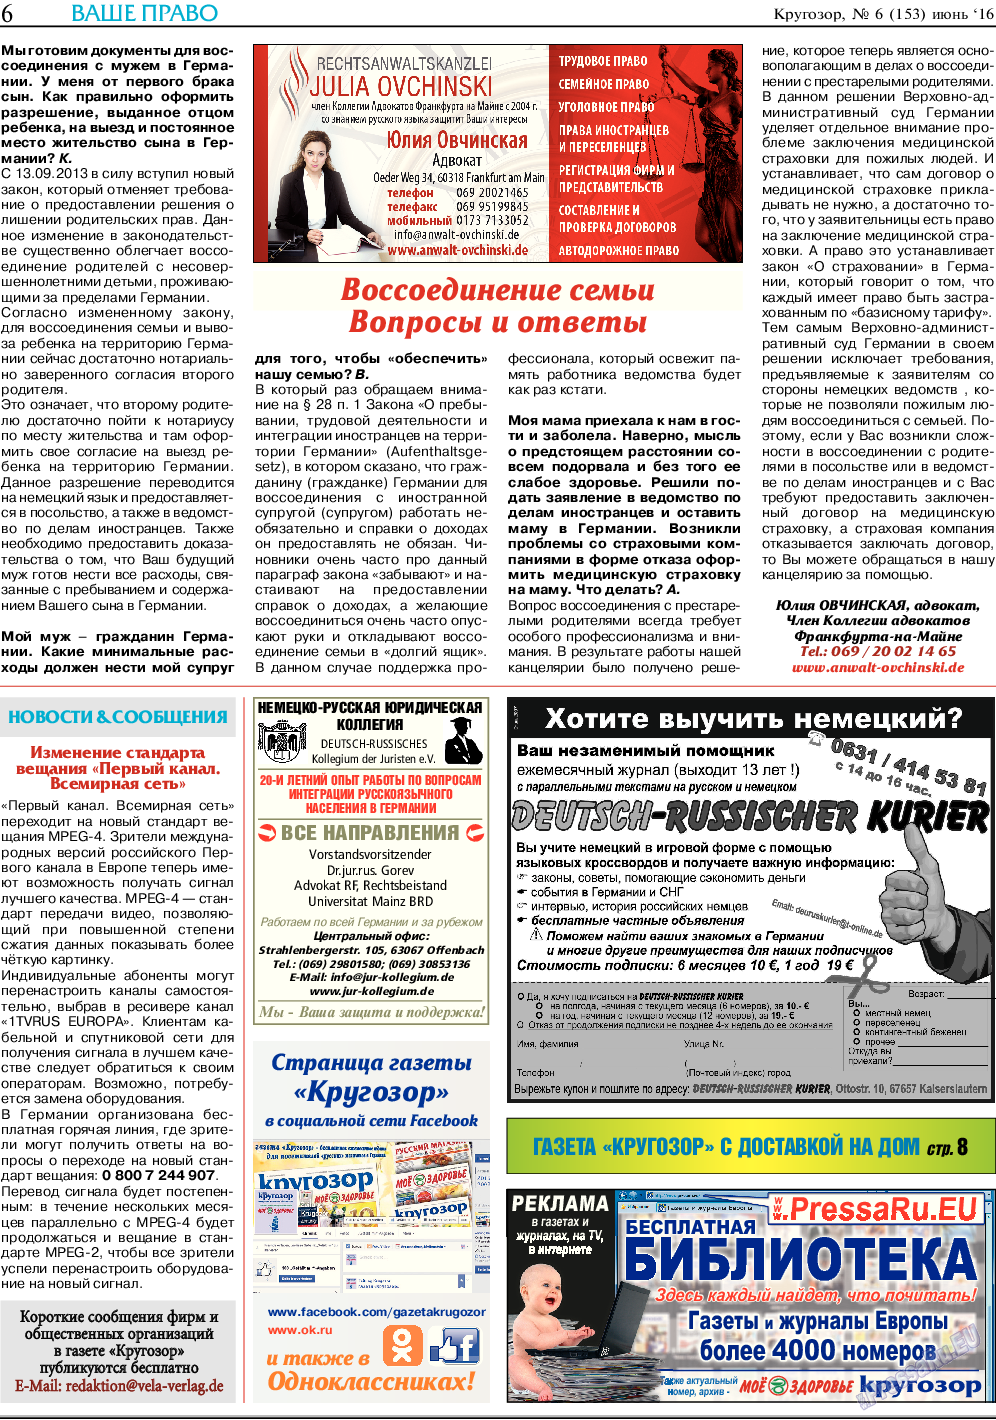 Кругозор, газета. 2016 №6 стр.6